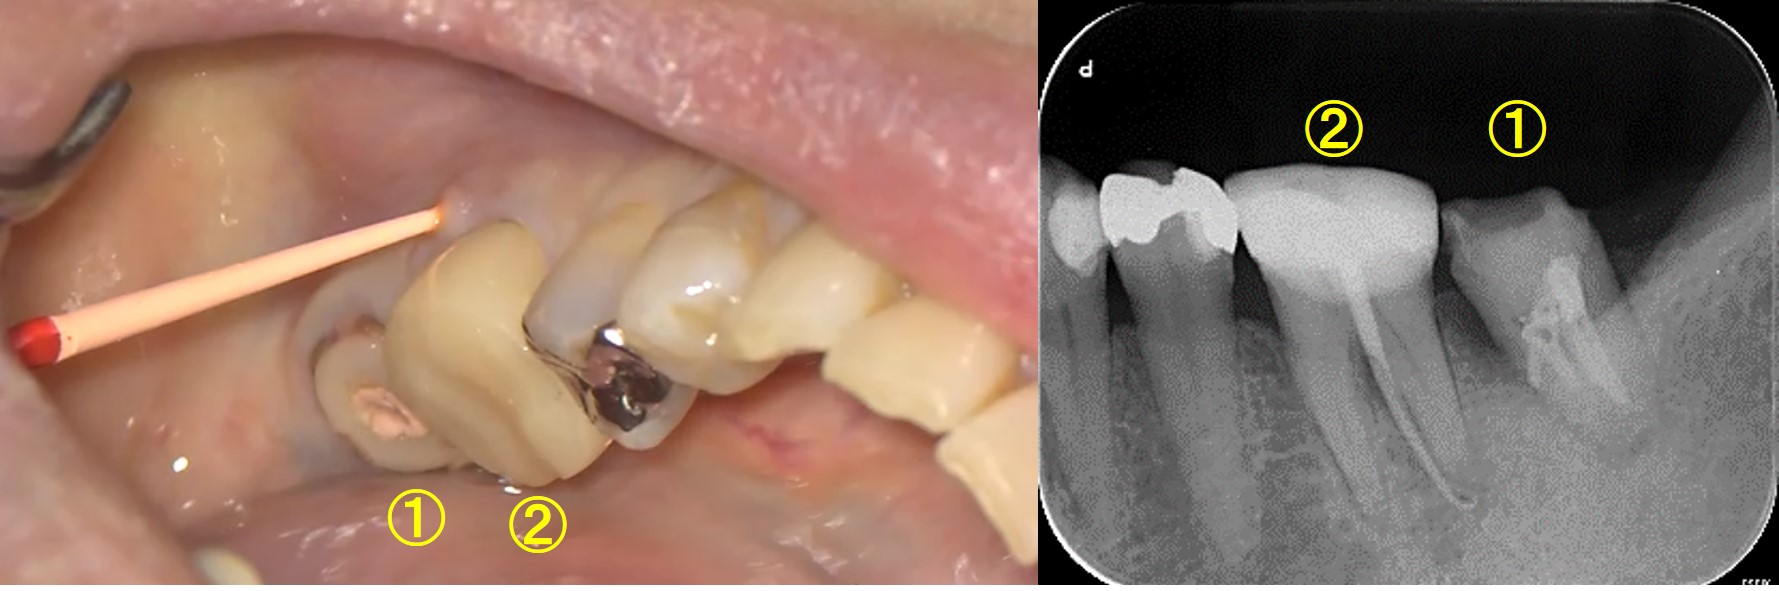 奥歯 の 奥 腫れ